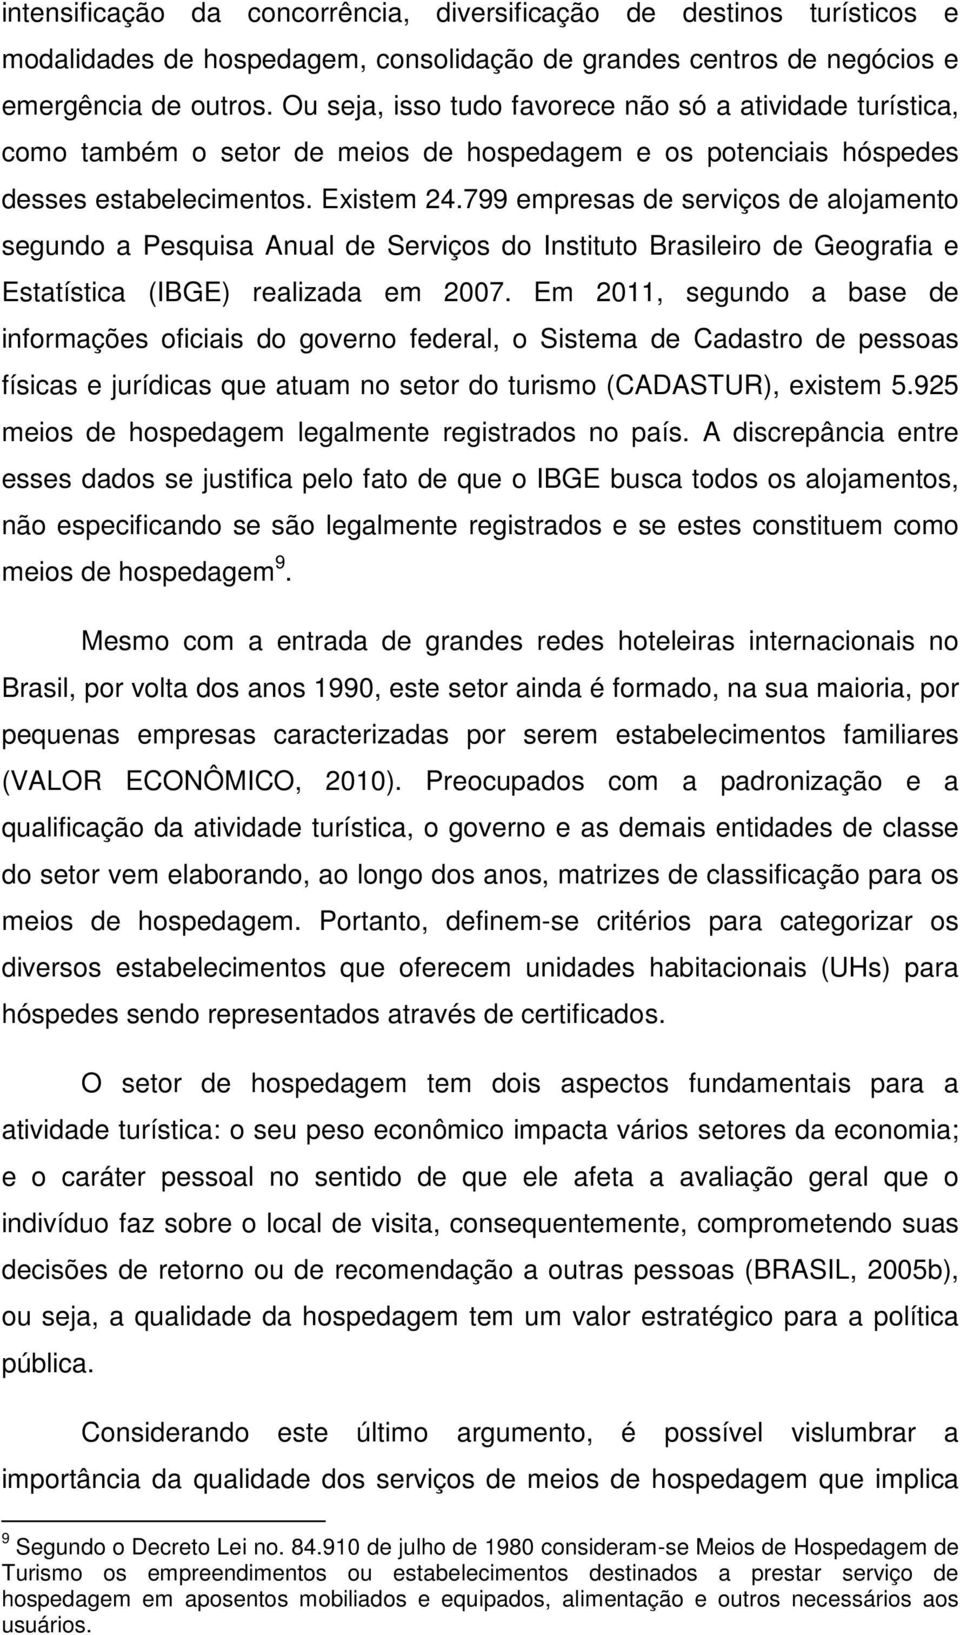 799 empresas de serviços de alojamento segundo a Pesquisa Anual de Serviços do Instituto Brasileiro de Geografia e Estatística (IBGE) realizada em 2007.